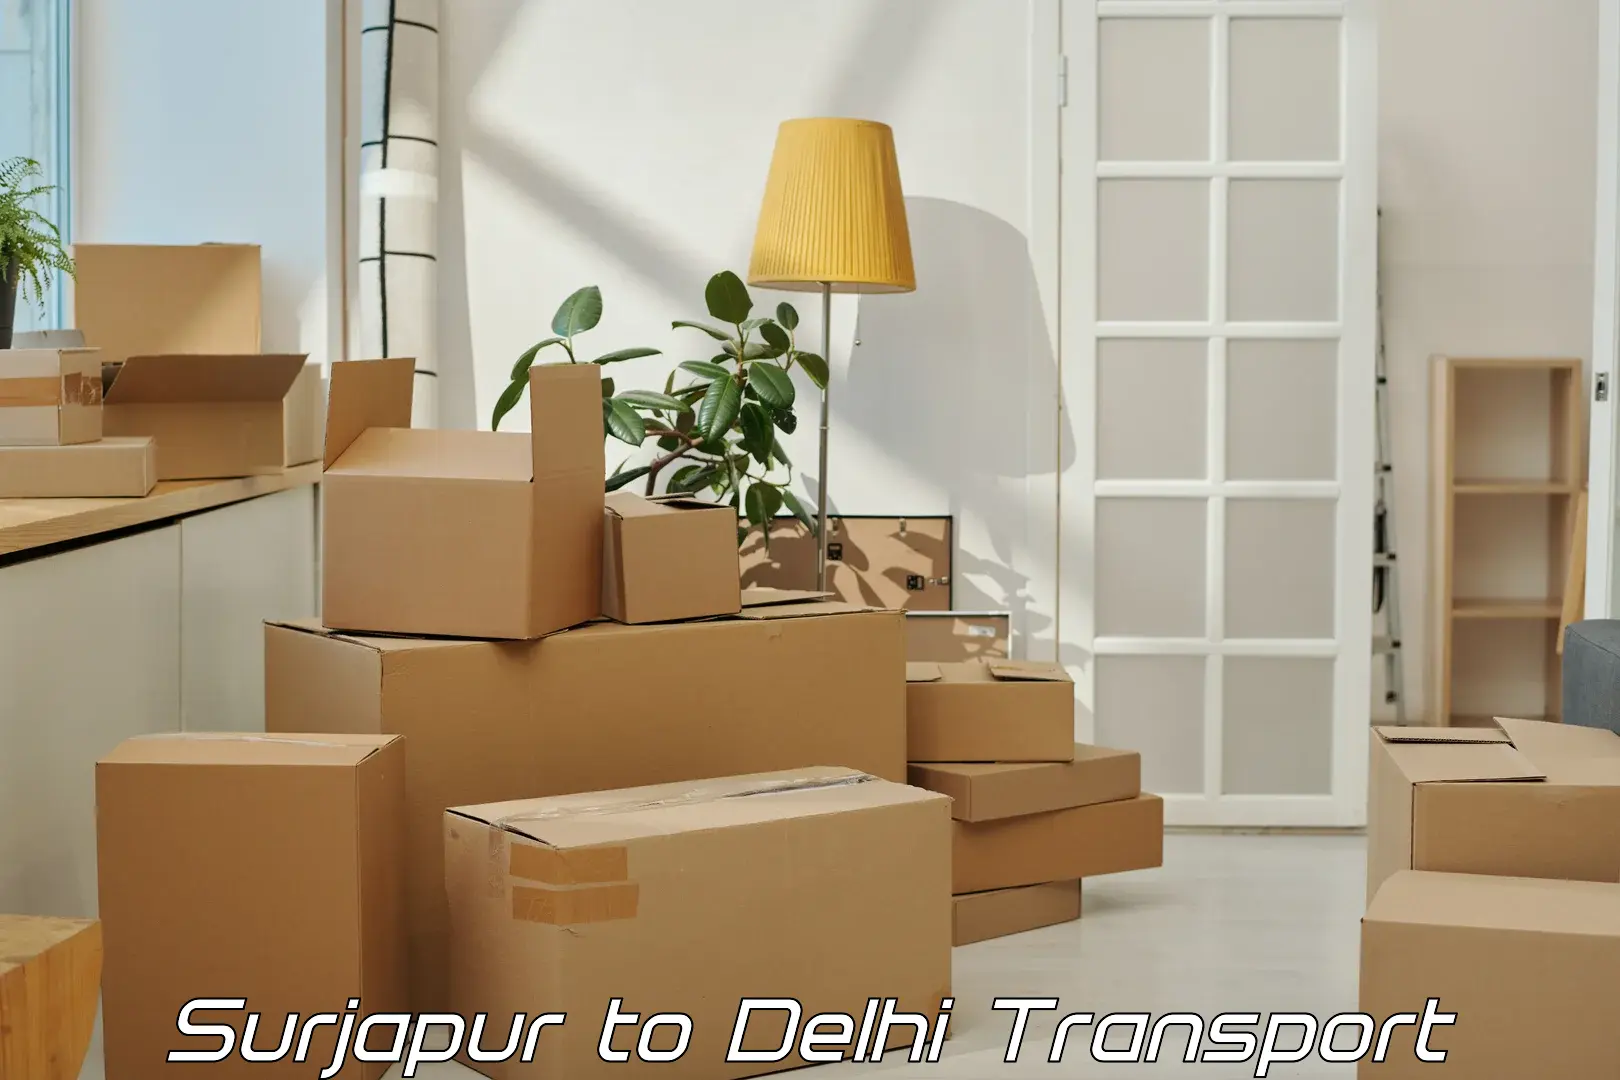 Shipping partner Surjapur to Delhi